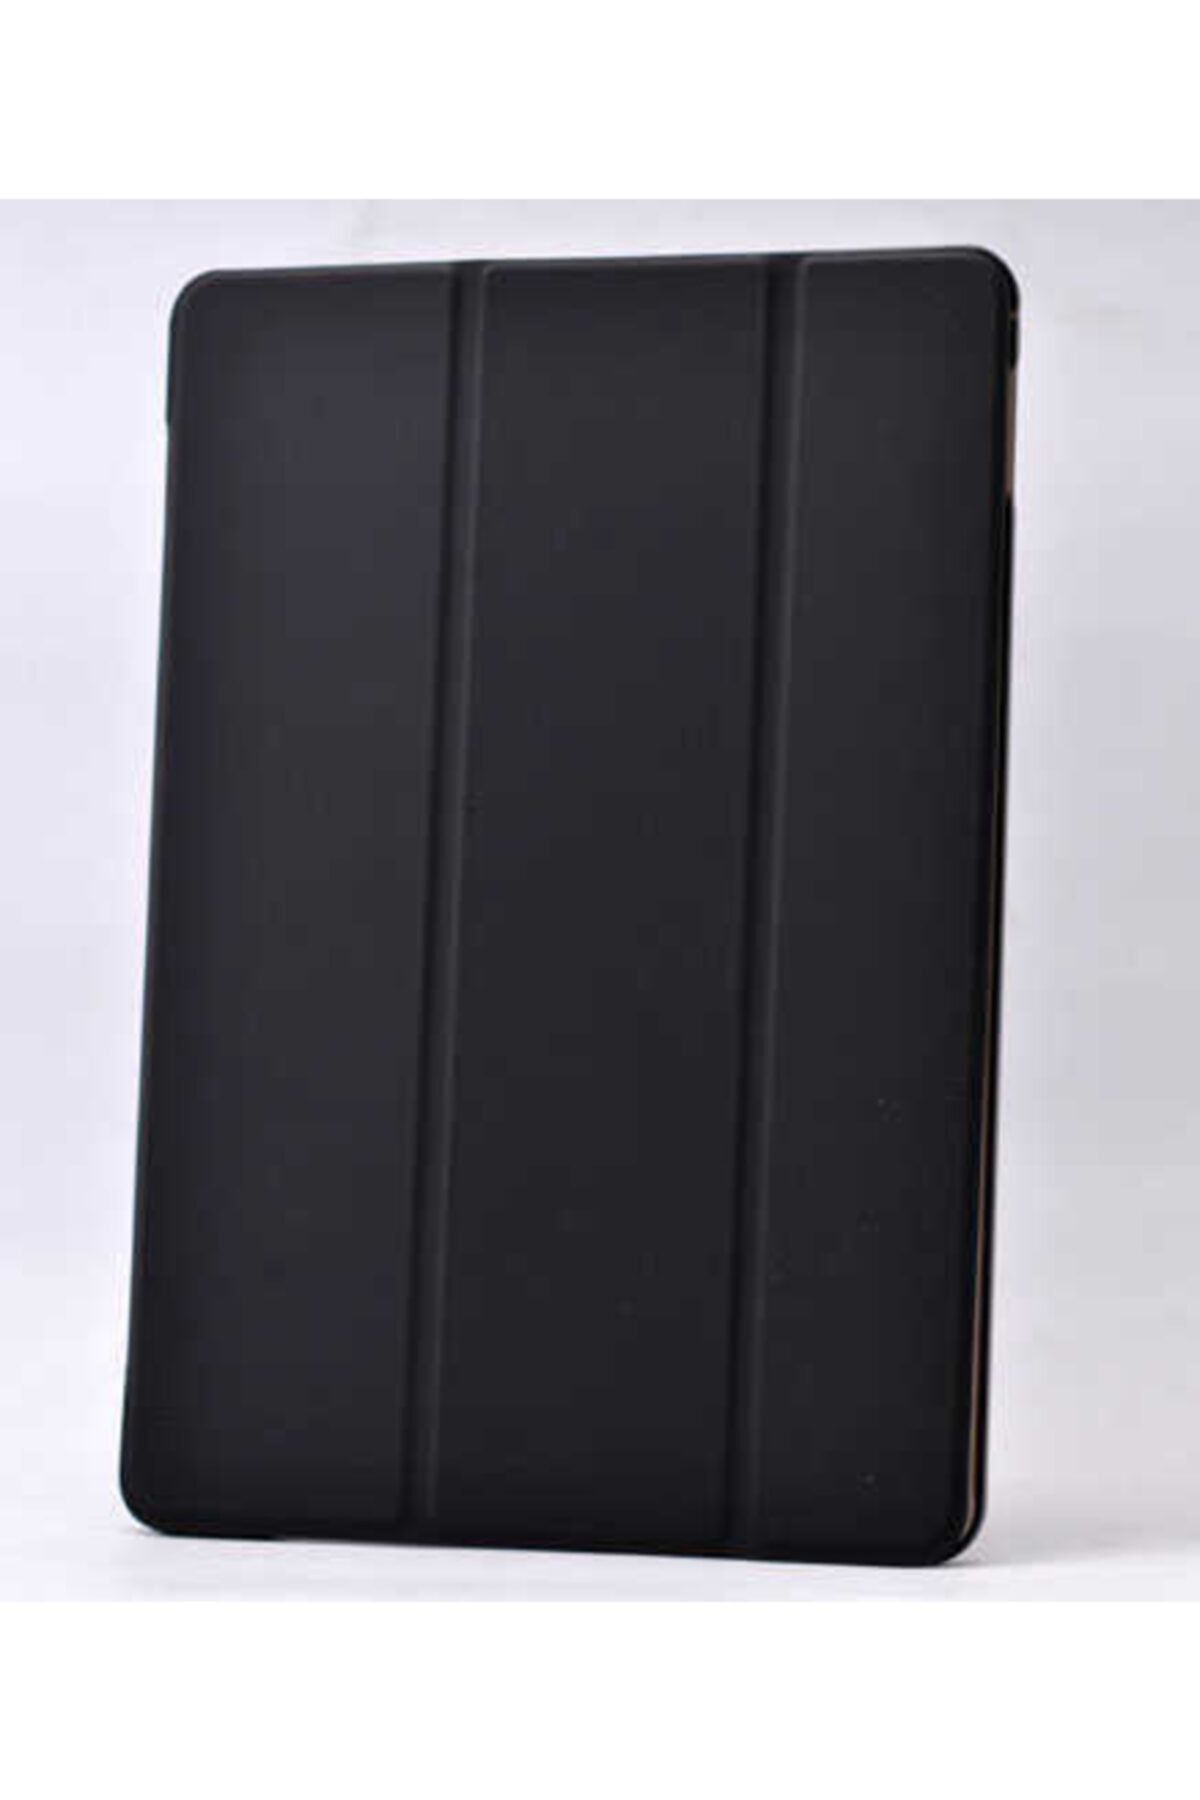 Dijimedia Galaxy Tab 3 Lite 7.0 T110 Zore Smart Cover Standlı 1-1 Kılıf Yeşil